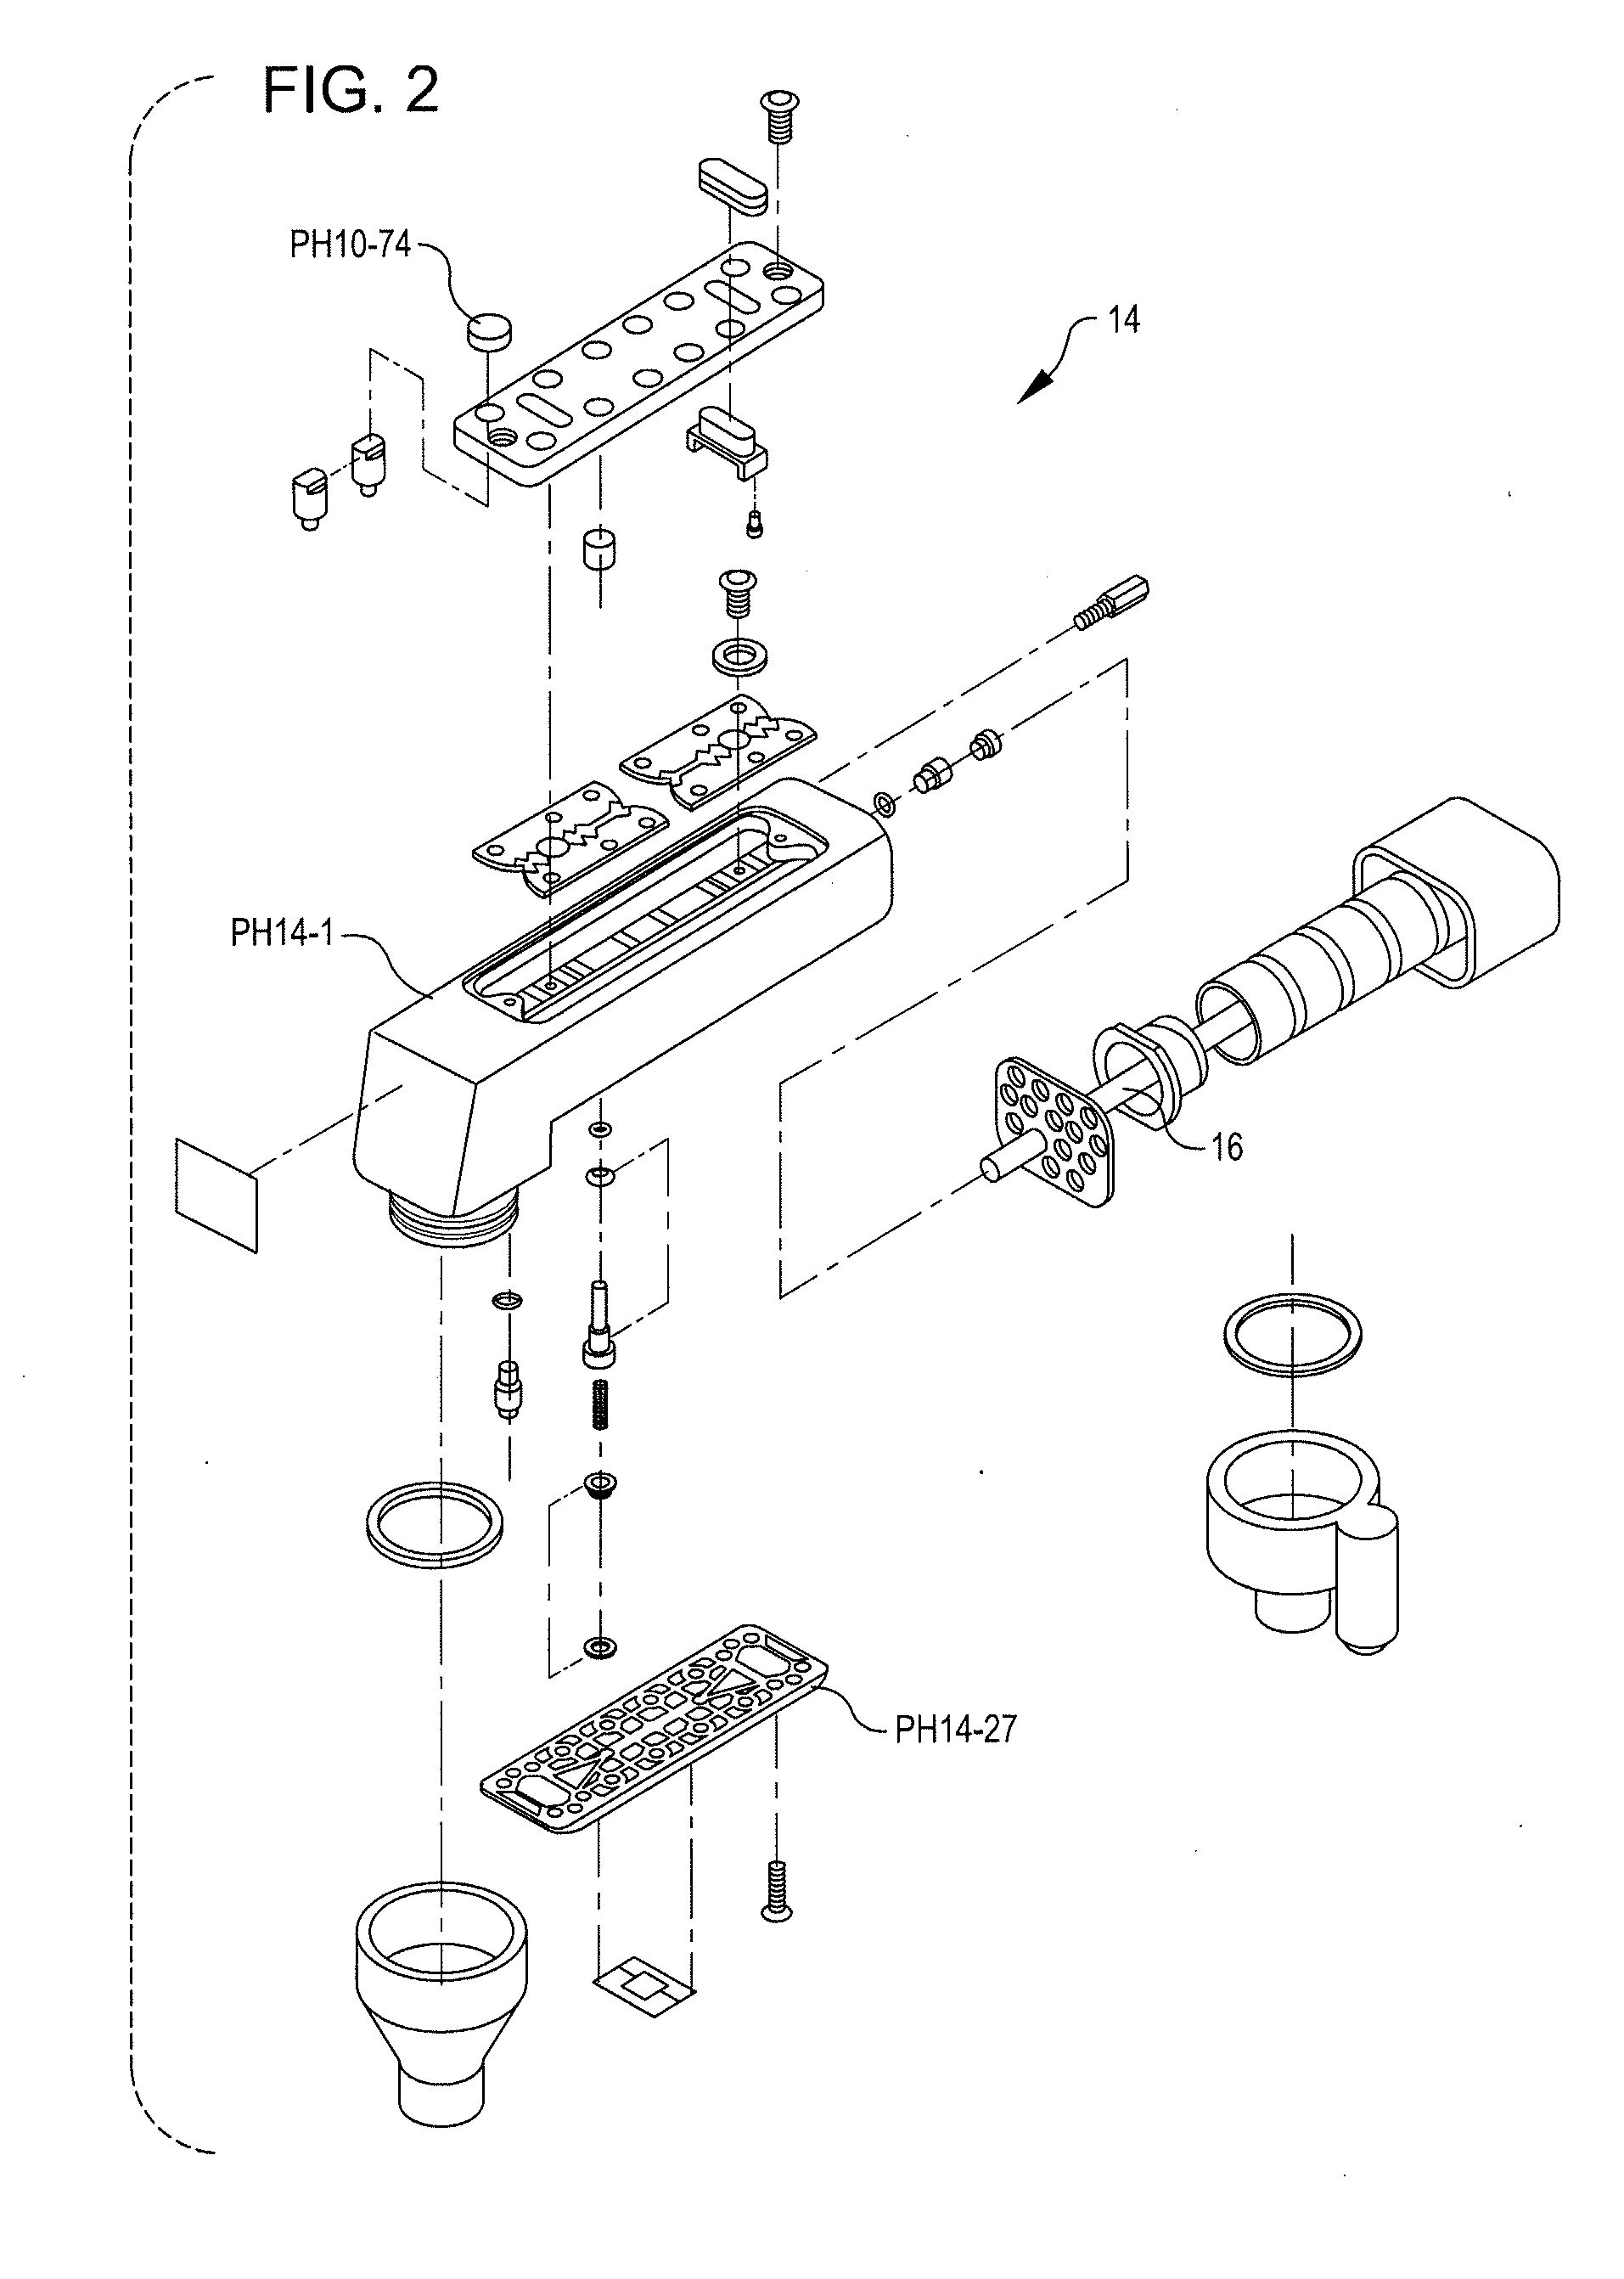 Locking access plug for a bar gun